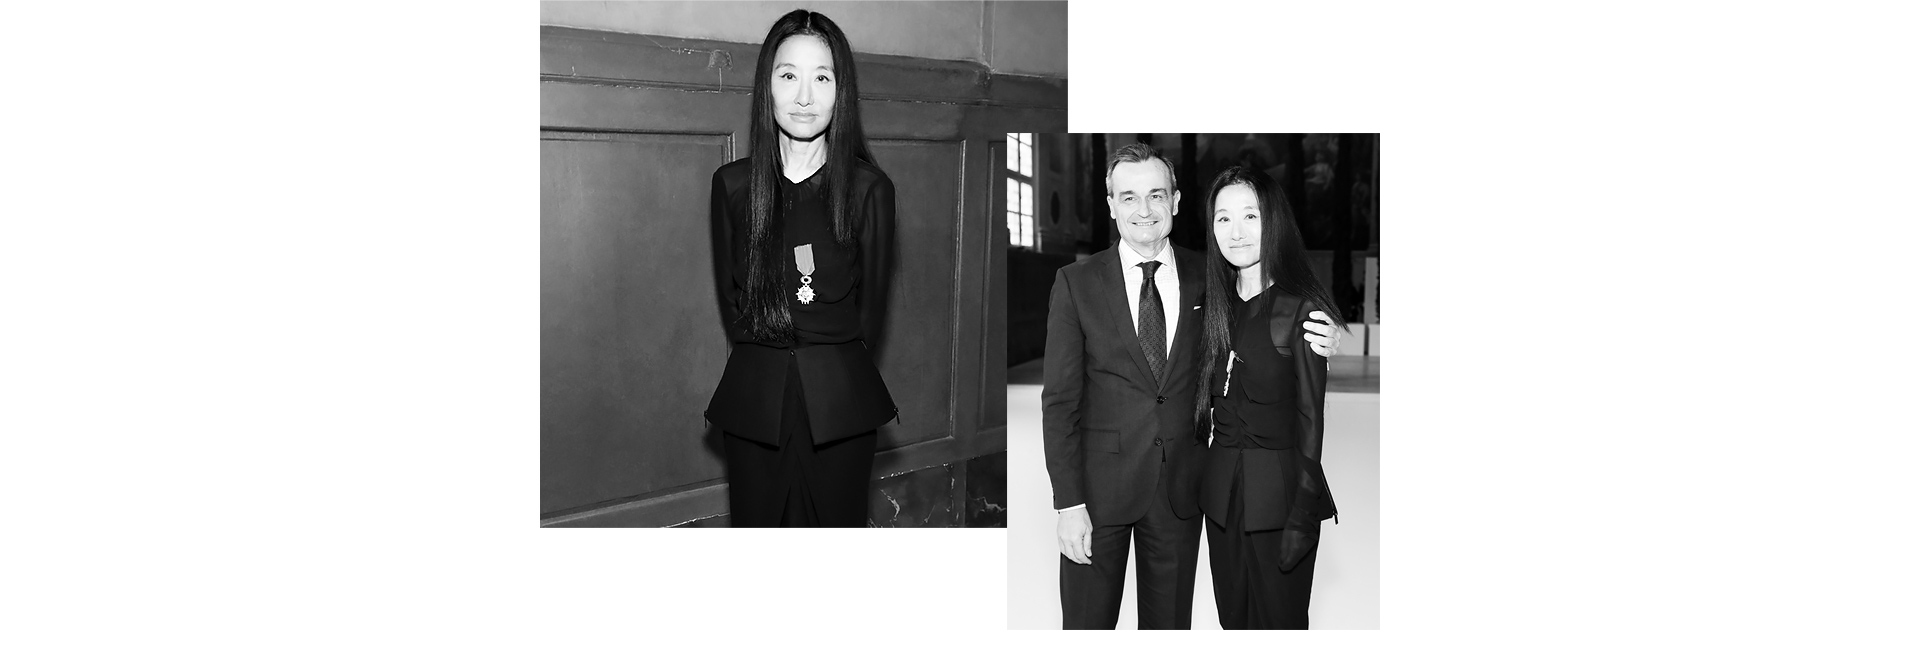 Вера Вонг: «Я прожила несколько жизней в моде» — интервью с дизайнером (фото 2)